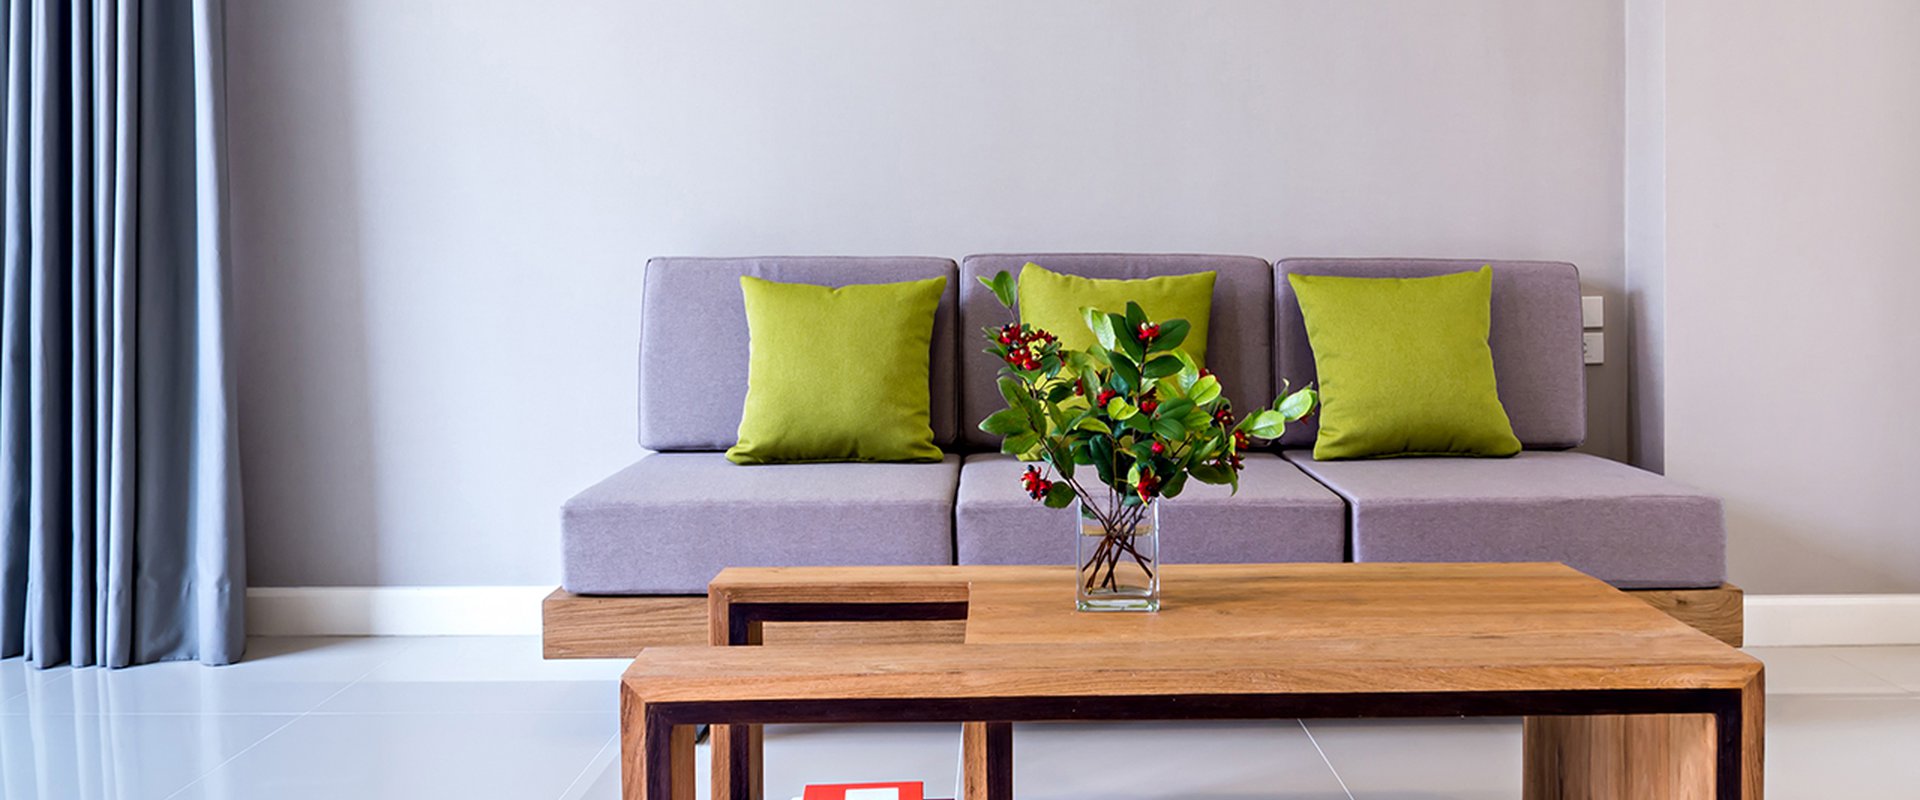 Florero sobre mesa con sofa moderno interior sala de estar